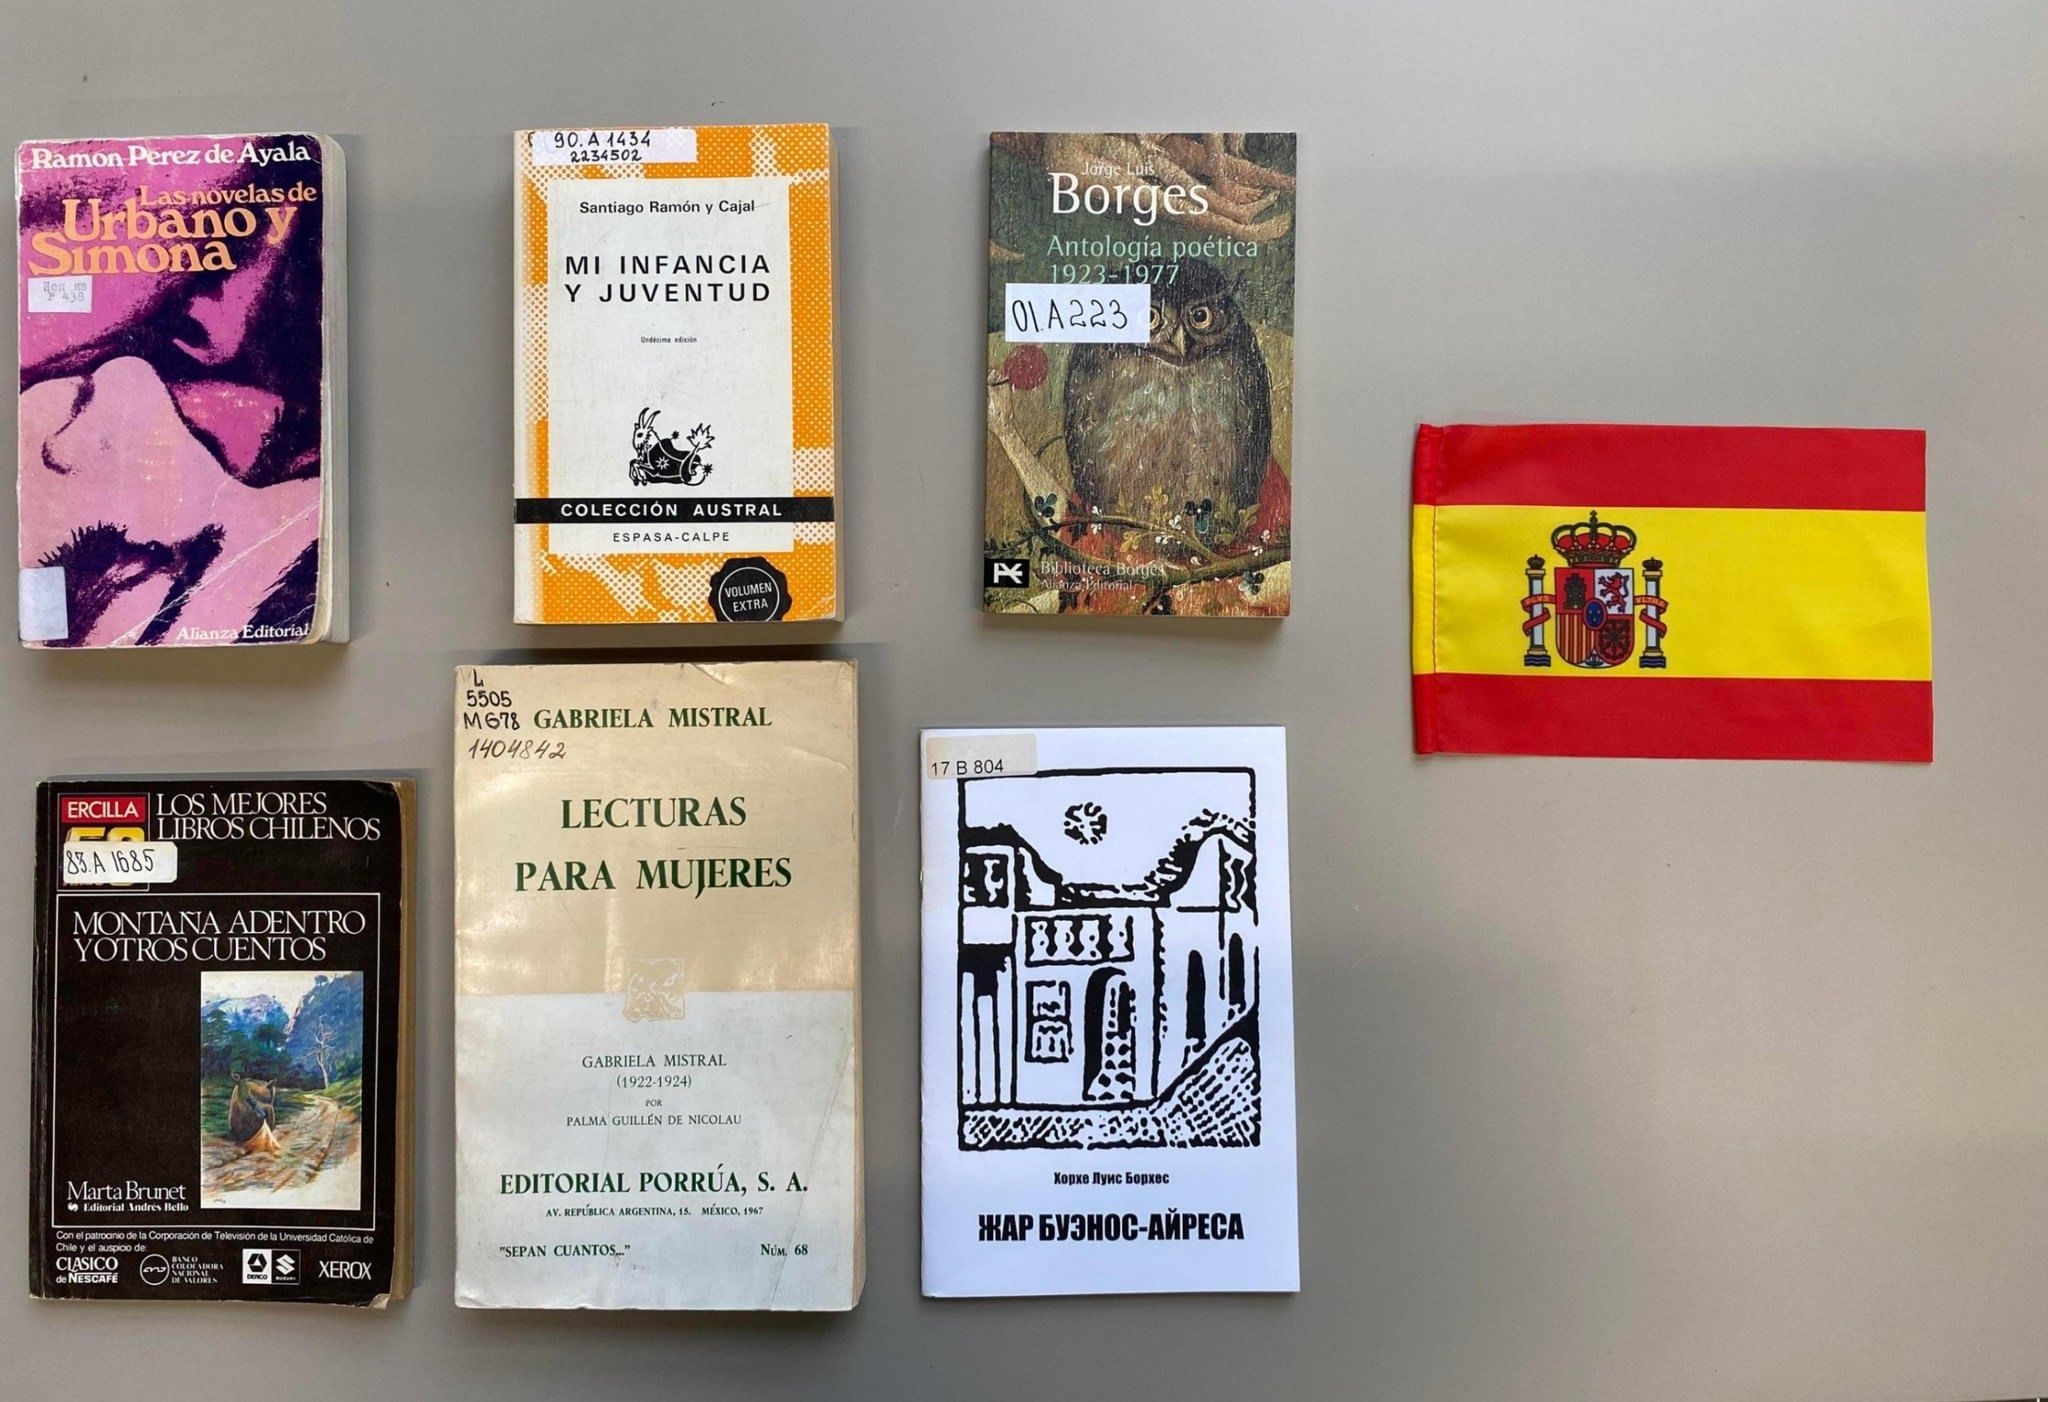 1923 год в Испании: знаменательные события культуры и книги-юбиляры